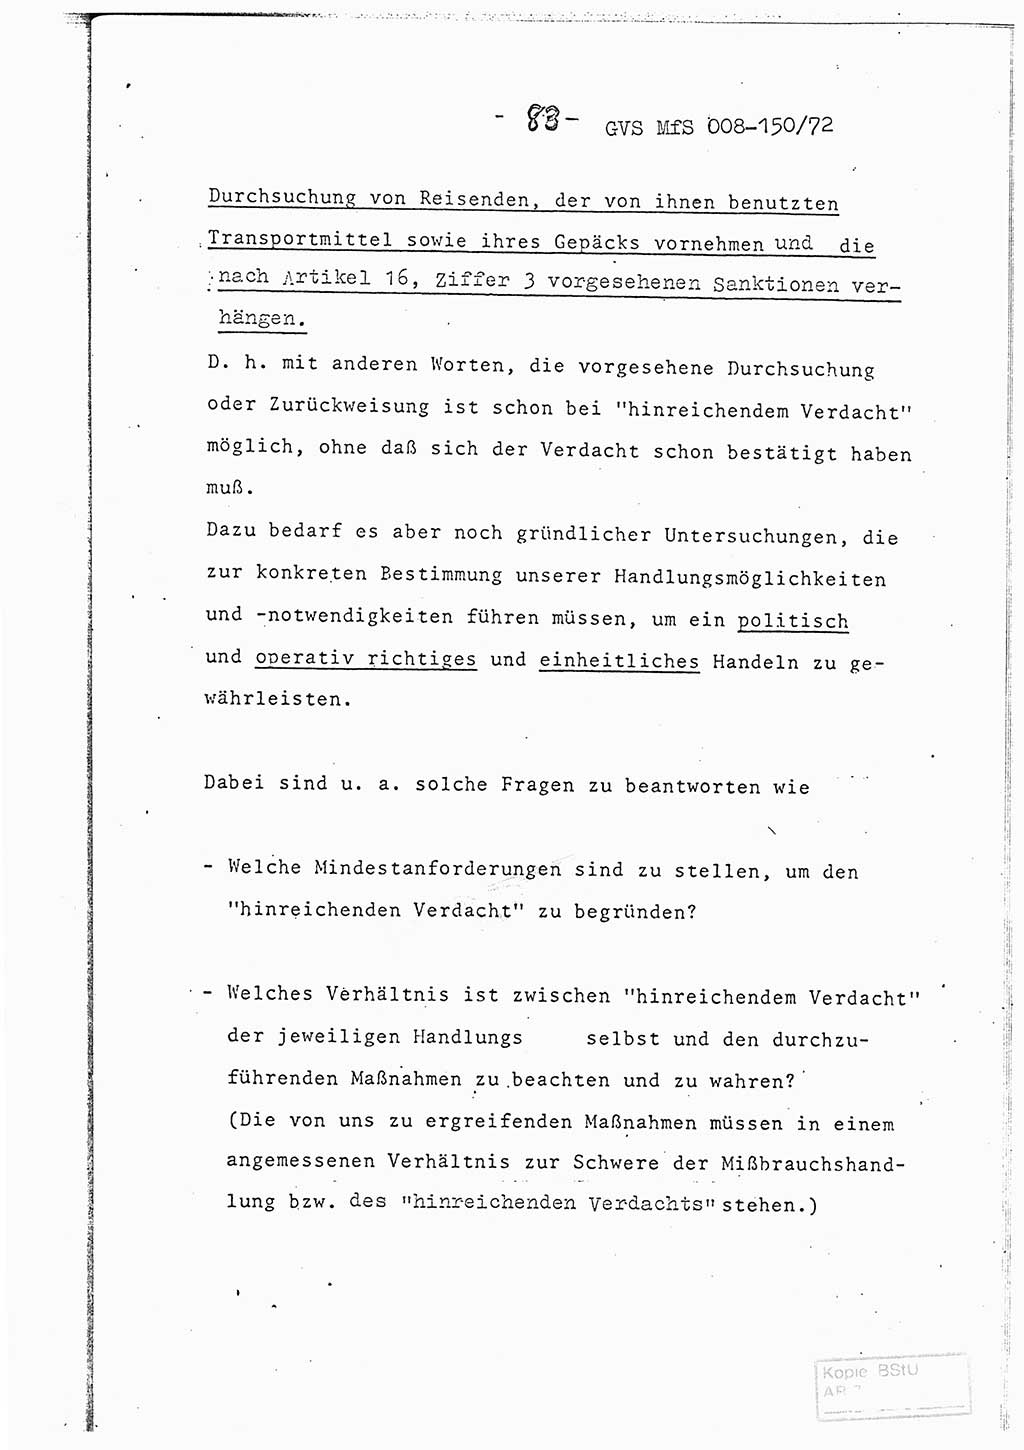 Referat (Entwurf) des Genossen Minister (Generaloberst Erich Mielke) auf der Dienstkonferenz 1972, Ministerium für Staatssicherheit (MfS) [Deutsche Demokratische Republik (DDR)], Der Minister, Geheime Verschlußsache (GVS) 008-150/72, Berlin 25.2.1972, Seite 83 (Ref. Entw. DK MfS DDR Min. GVS 008-150/72 1972, S. 83)